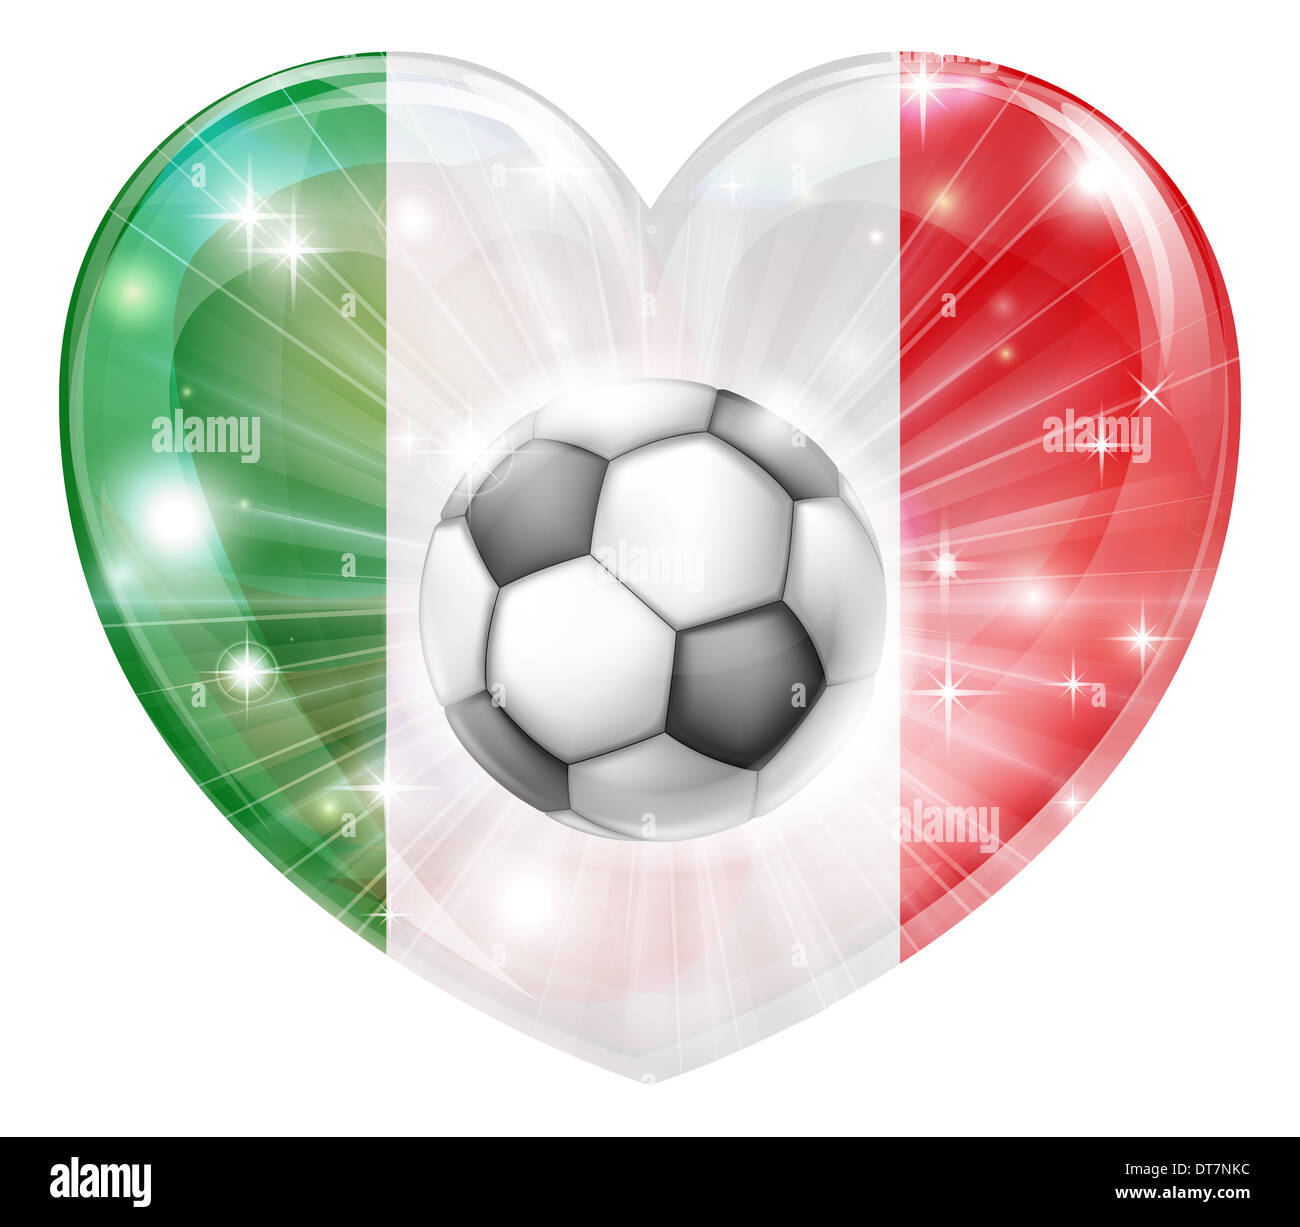 Die Italienische Flagge In Form Eines Glänzend Herz Lizenzfreie